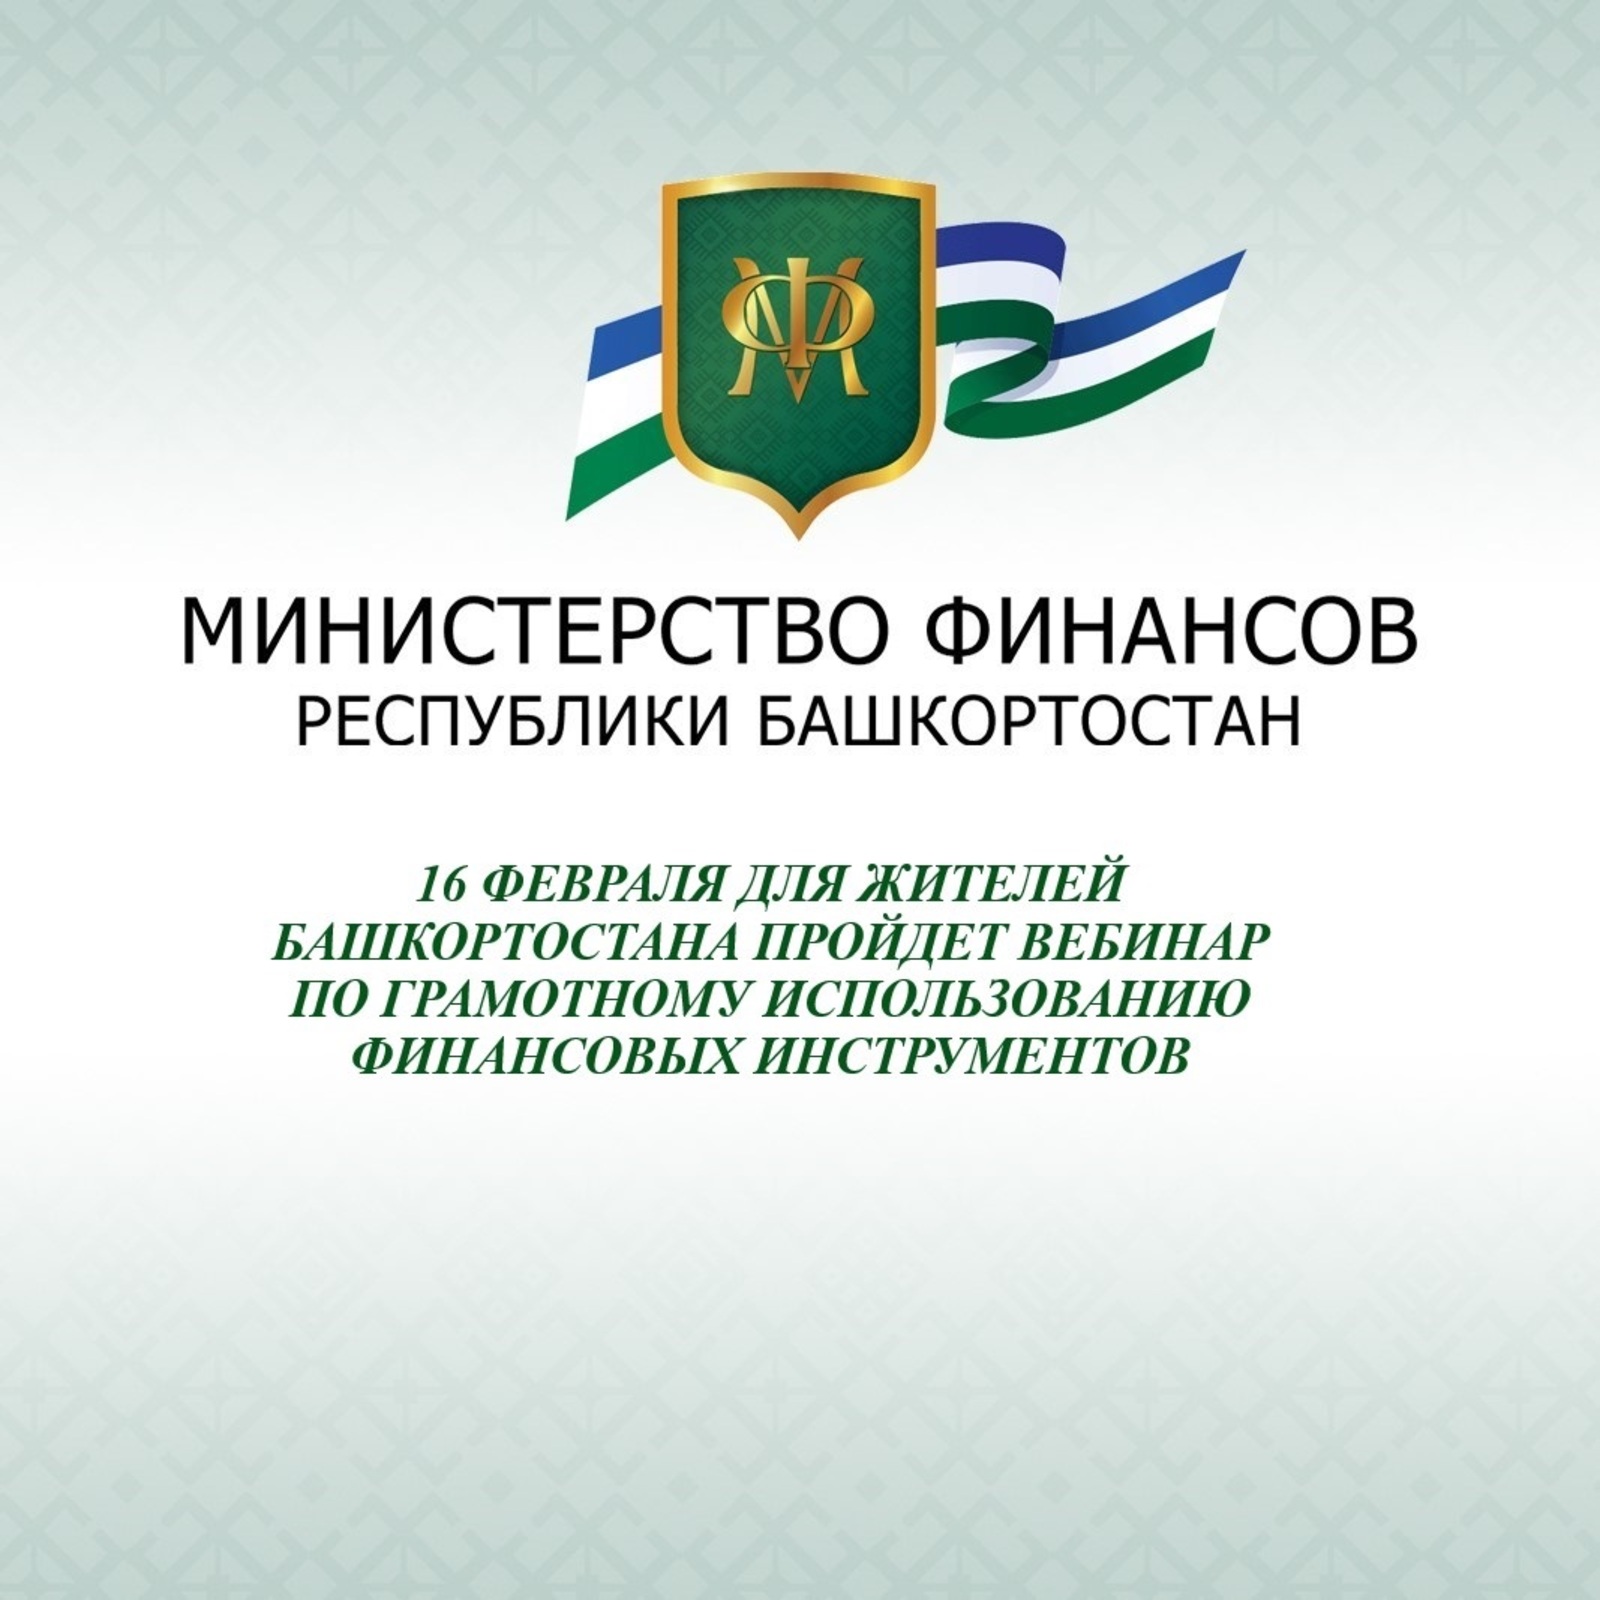 16 февраля для жителей Башкортостана пройдет вебинар по грамотному использованию финансовых инструментов